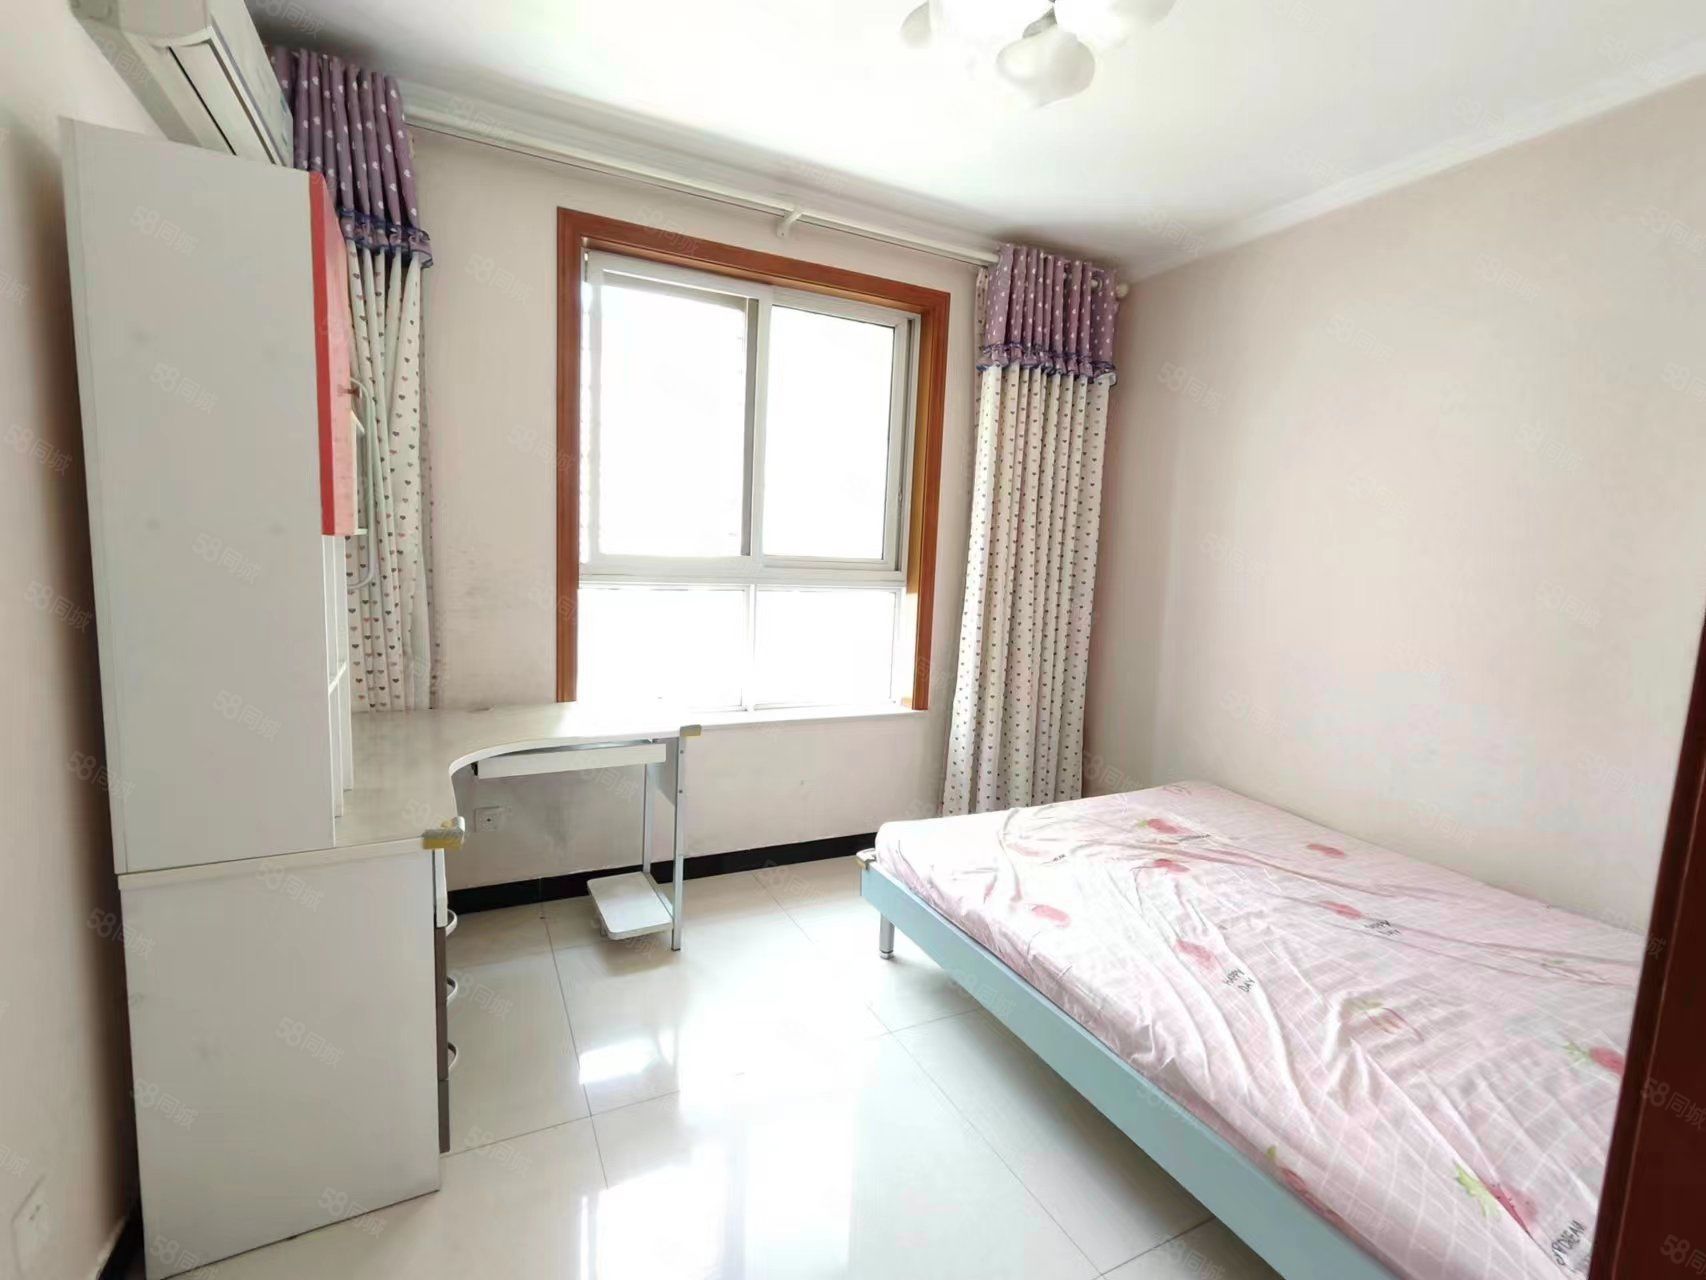 江林新城 丰硕家园 高新领域 精装两室 随时看房 拎包入住